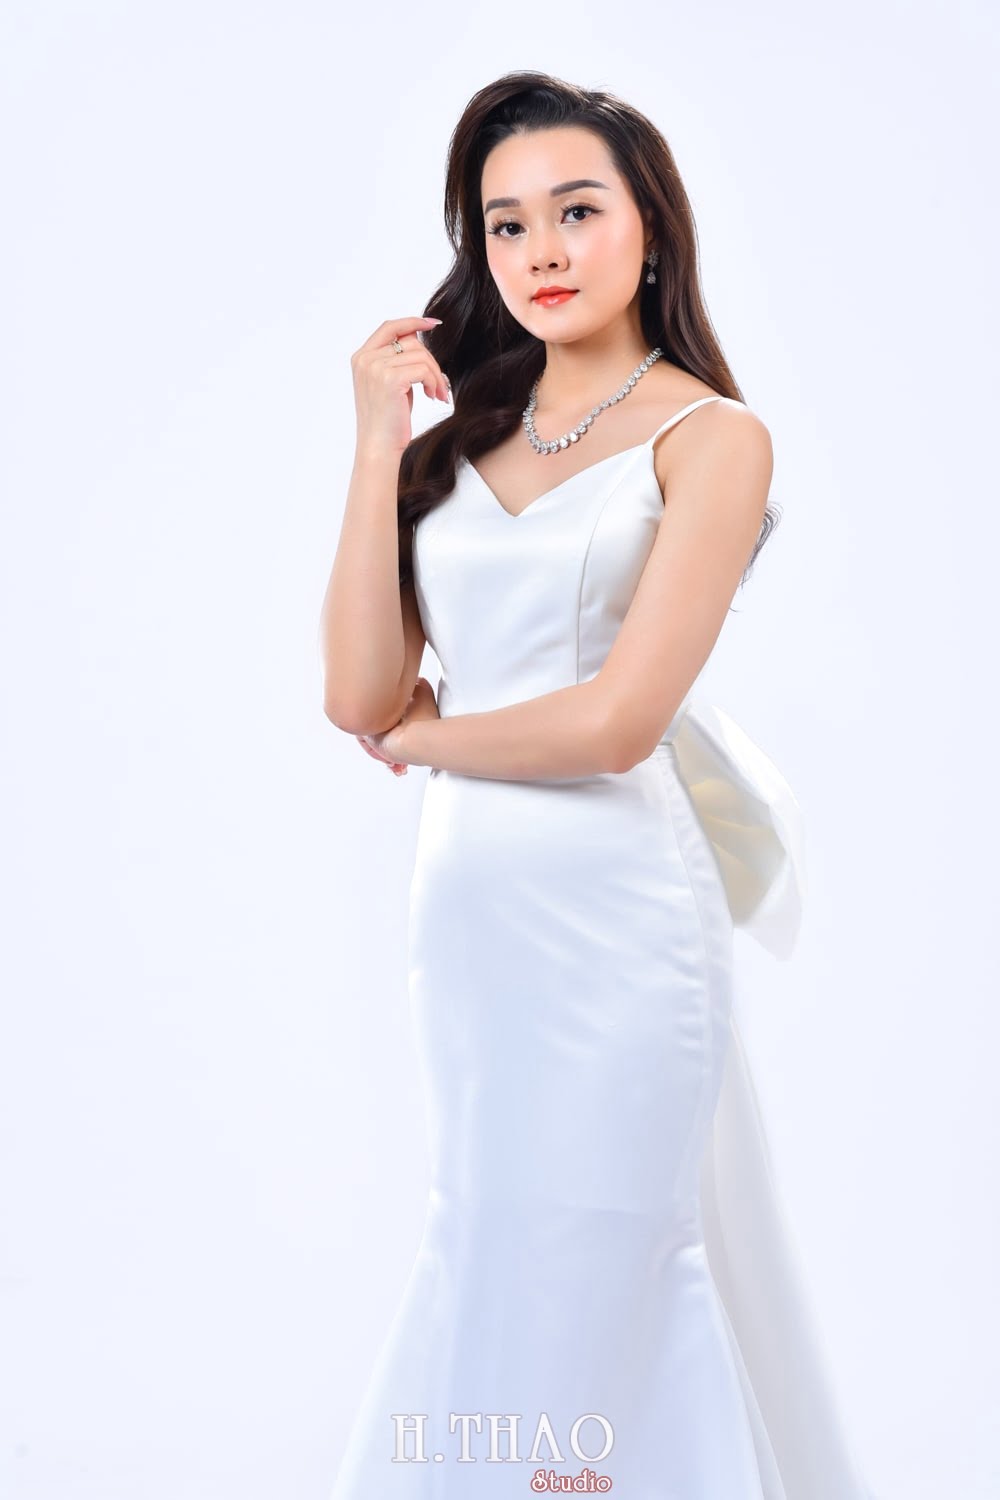 Anh doanh nhan nu 26 min - Album ảnh doanh nhân nữ phong cách beauty đẹp- HThao Studio